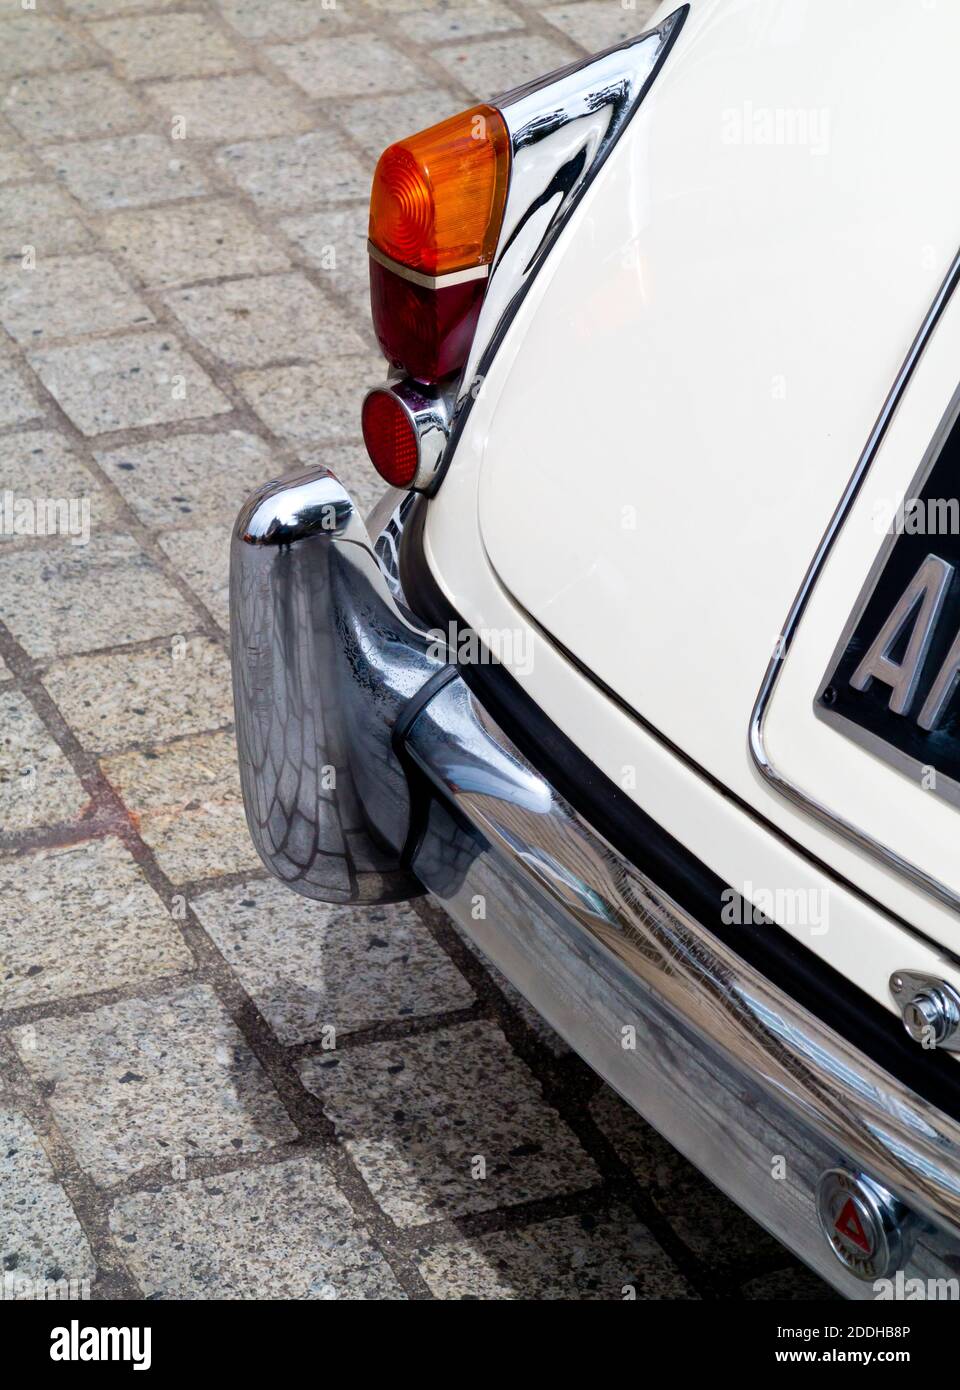 Detalle del parachoques trasero y las luces del Jaguar Mark 2 3.4 litros un berlina deportiva de lujo de tamaño medio fabricado en Coventry, Inglaterra, desde 1959 hasta 1967. Foto de stock